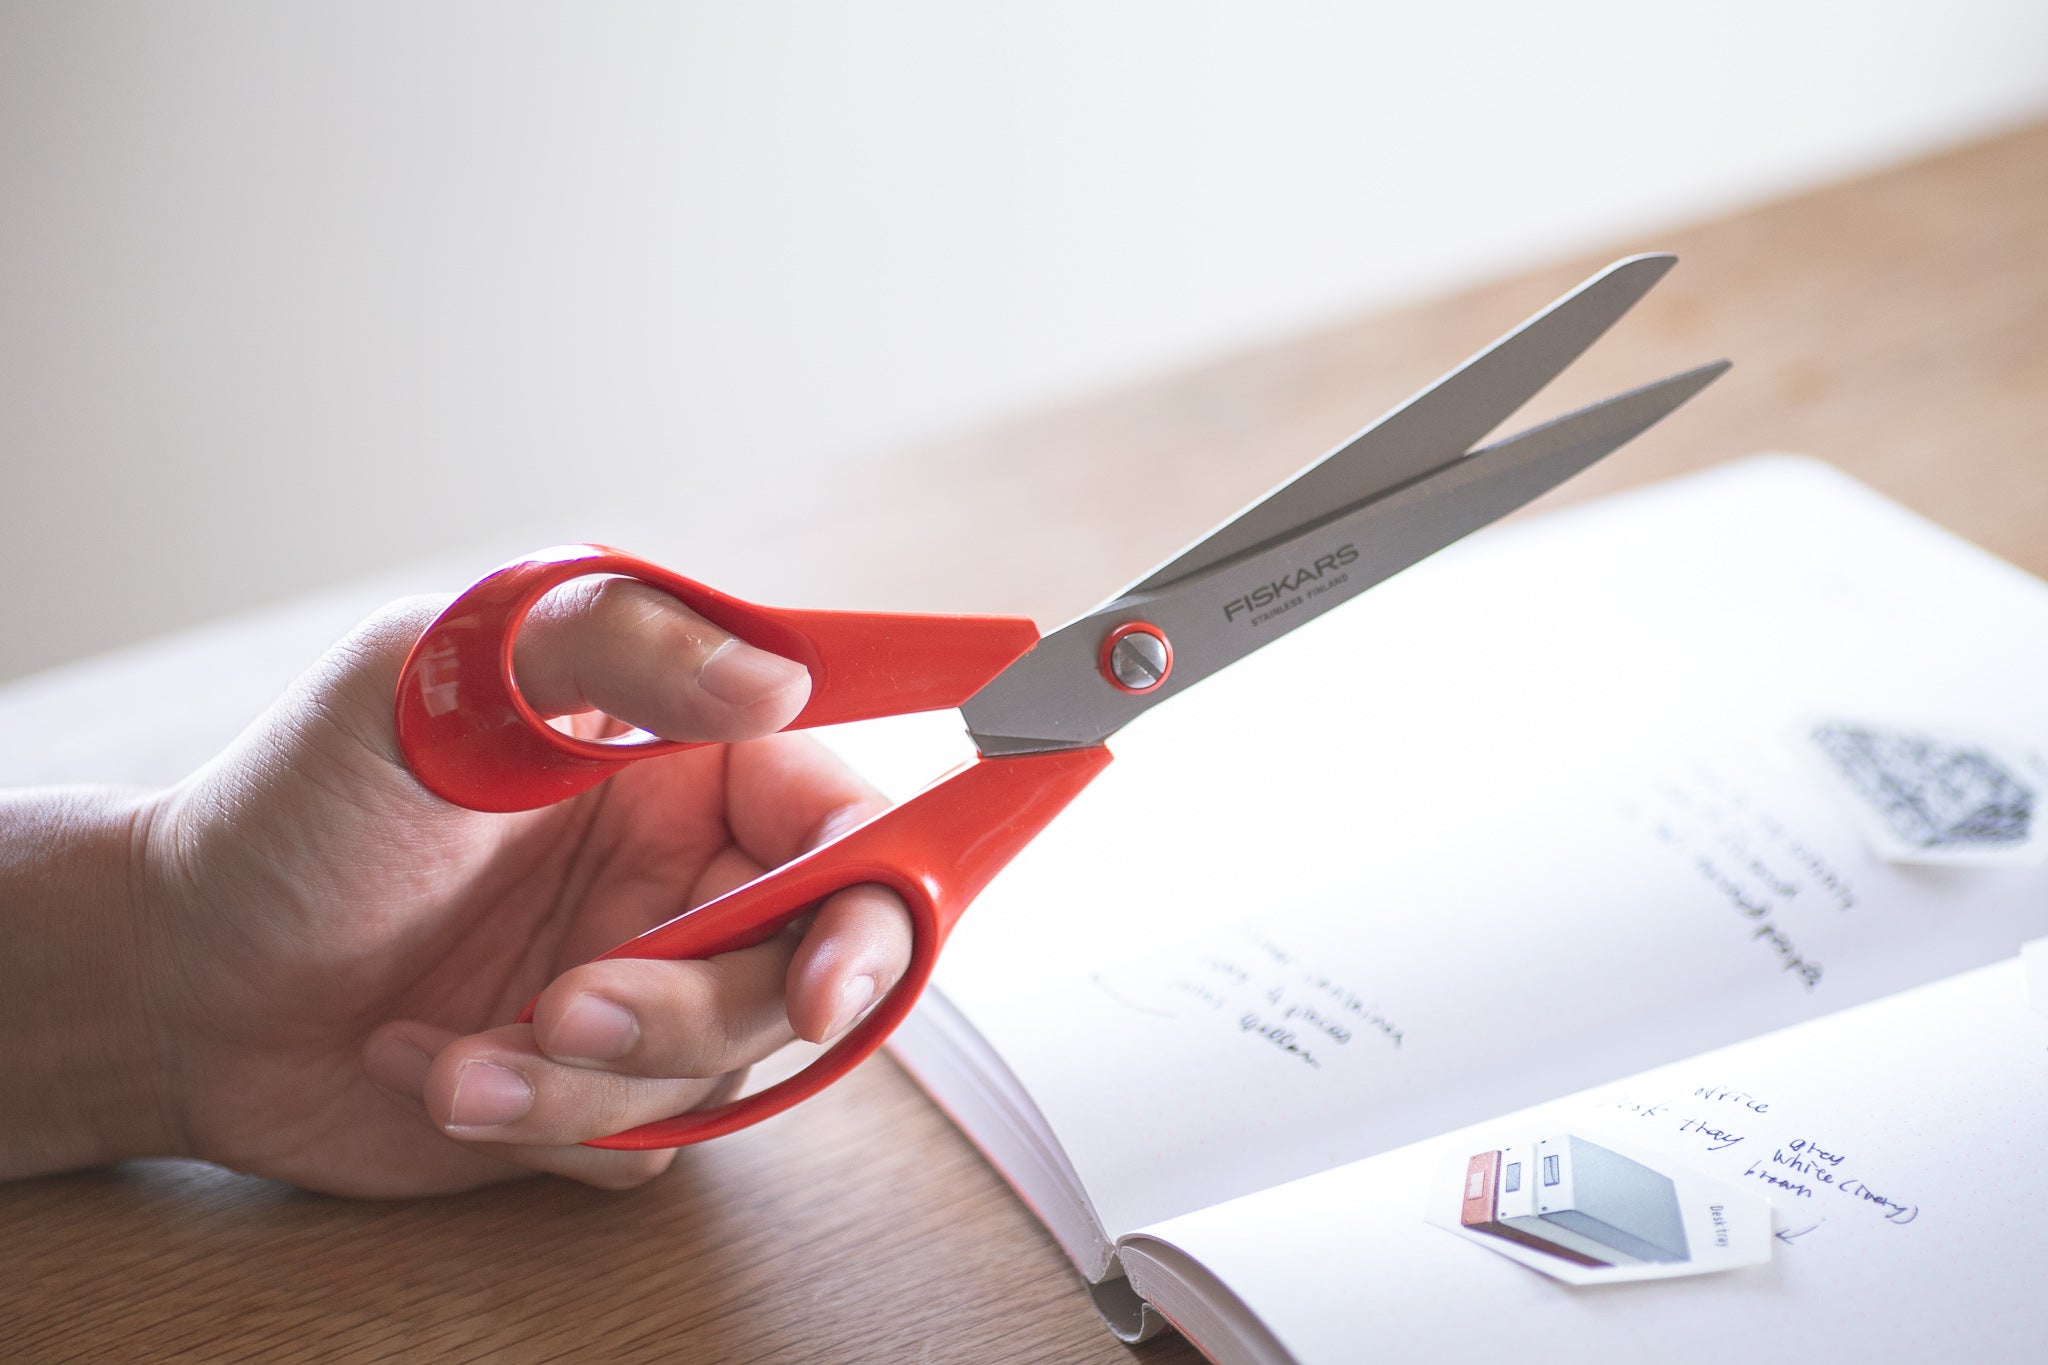 Left-handed red scissors being held in the left hand